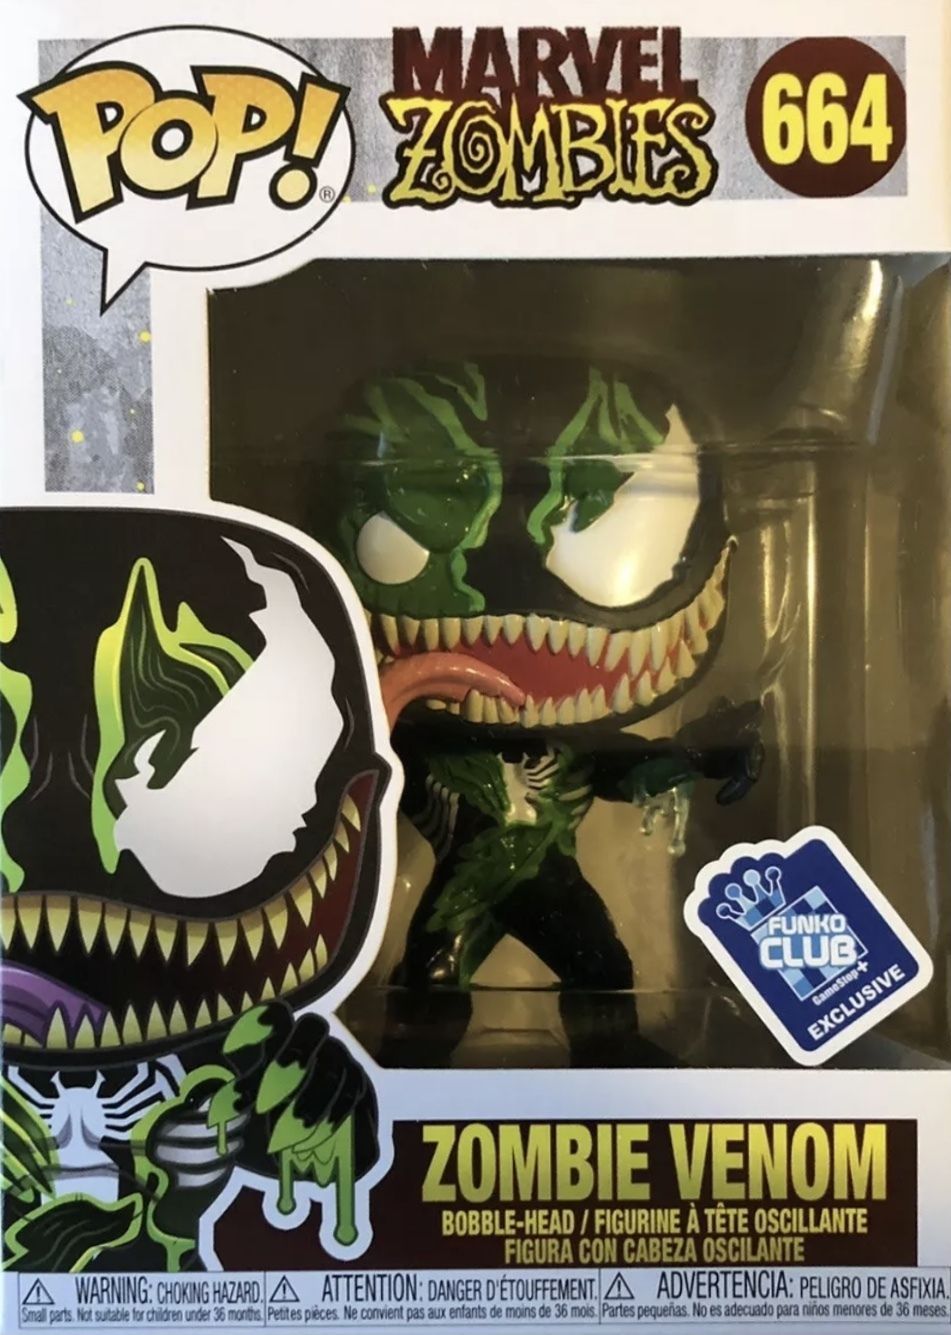 Funko Pop! Zombie Venom #664 (Bobble-Head) [Funko Club GameStop]